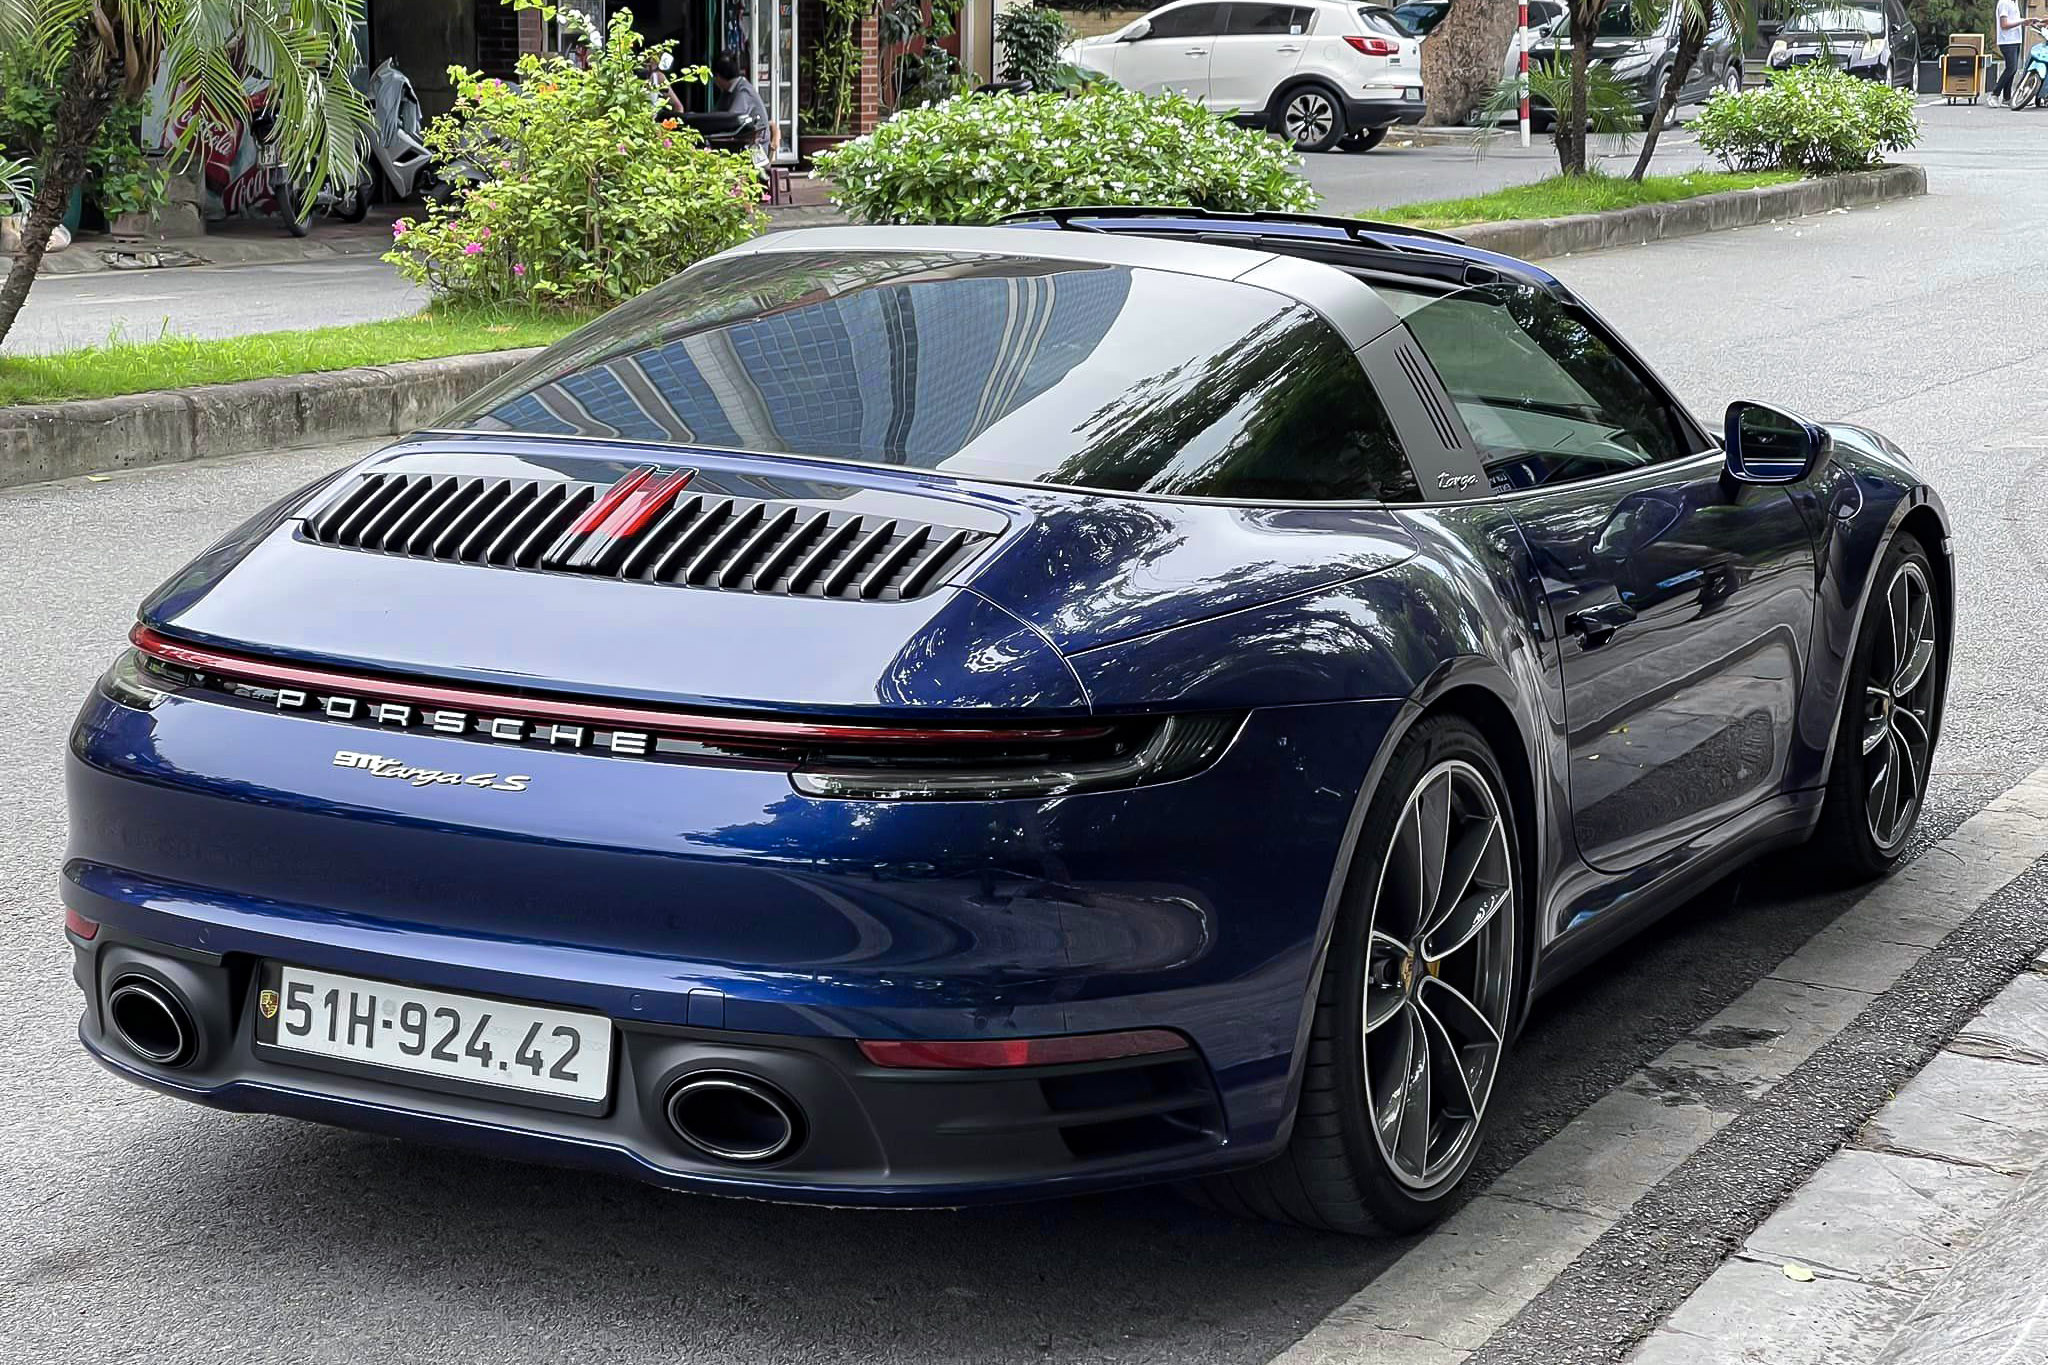 Hàng hiếm Porsche 911 từng của Novaland lên sàn xe cũ rớt giá 2 tỷ đồng